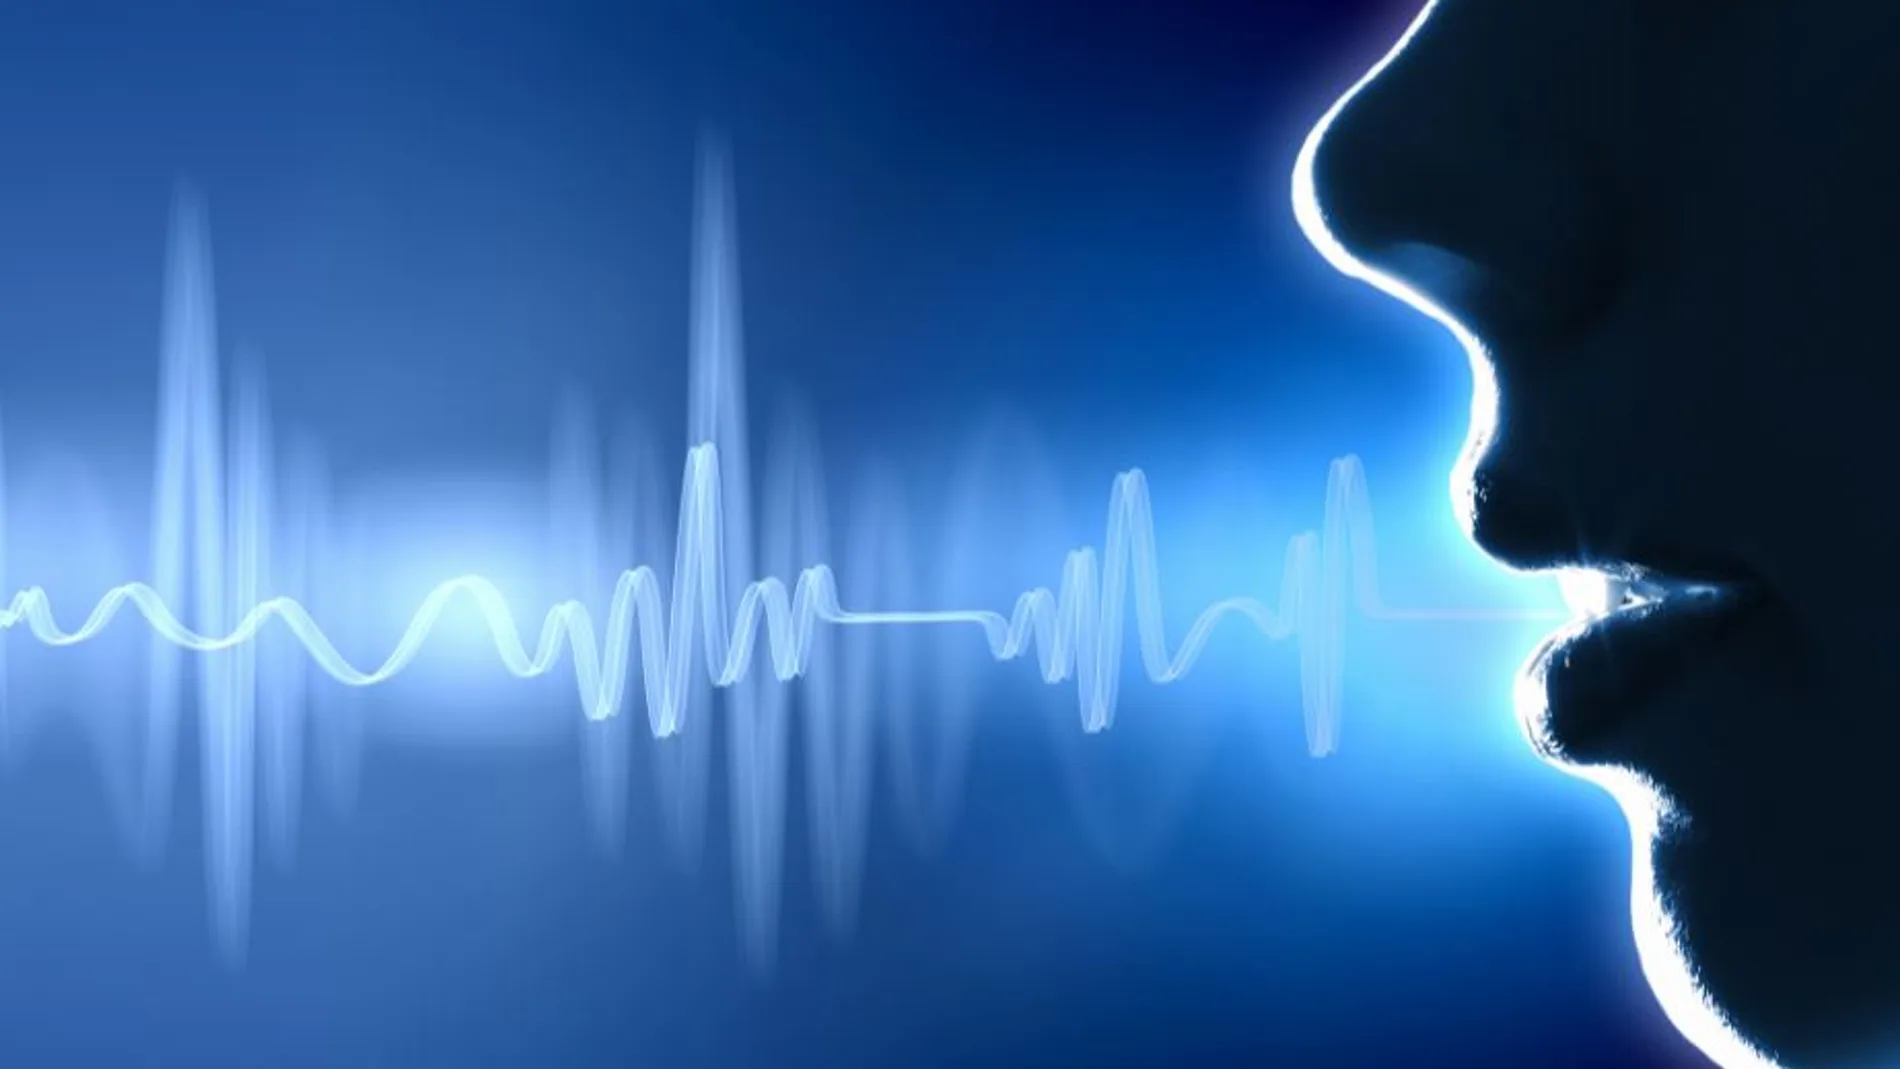 7 Cambiador de Voz Profunda: Haz que tu voz sea grave fácilmente - EaseUS